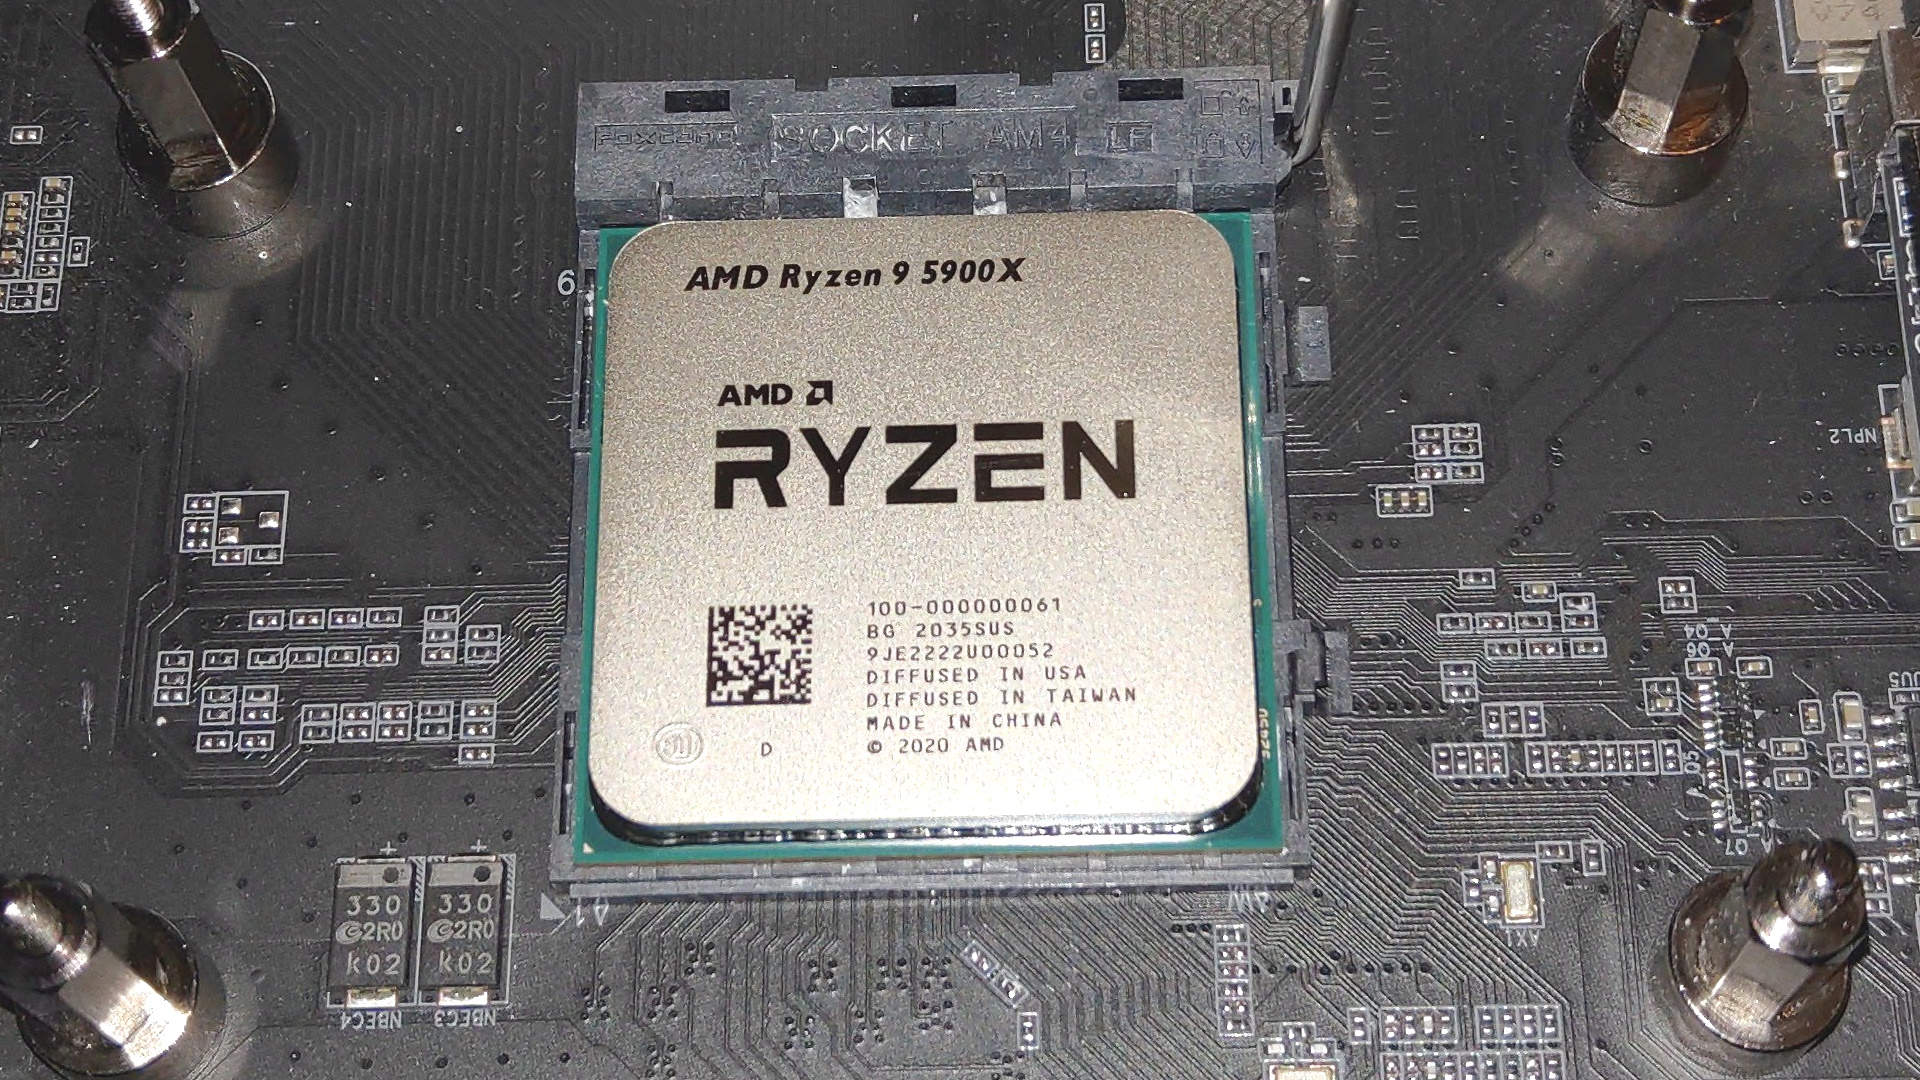 AMD Ryzen 9 5900X in a motherboard